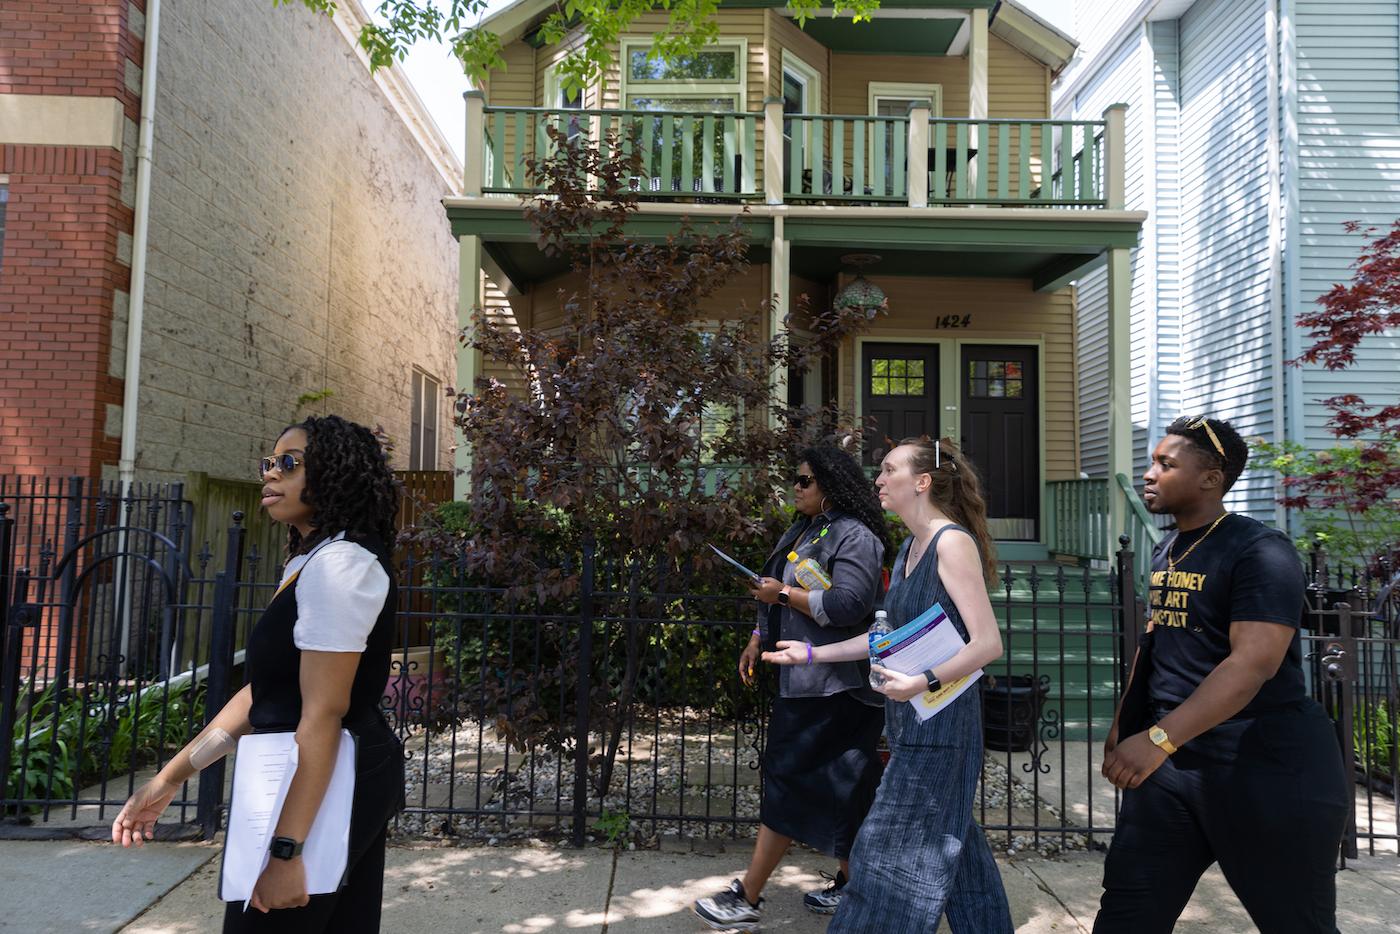 Tour participants walk past a house in Lincoln Park